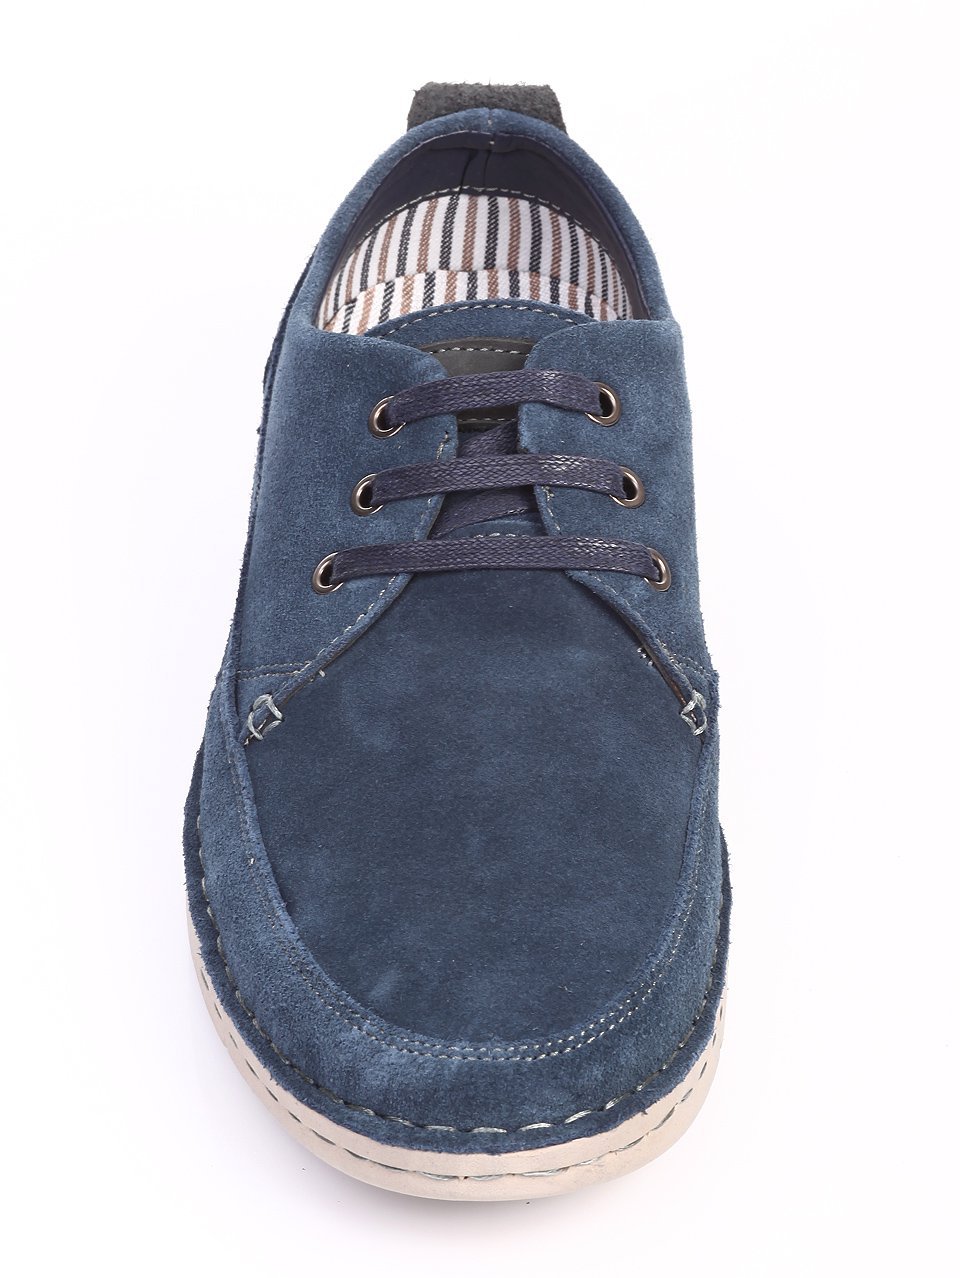 Ежедневни мъжки обувки от естествен велур в синьо 7N-17402 navy